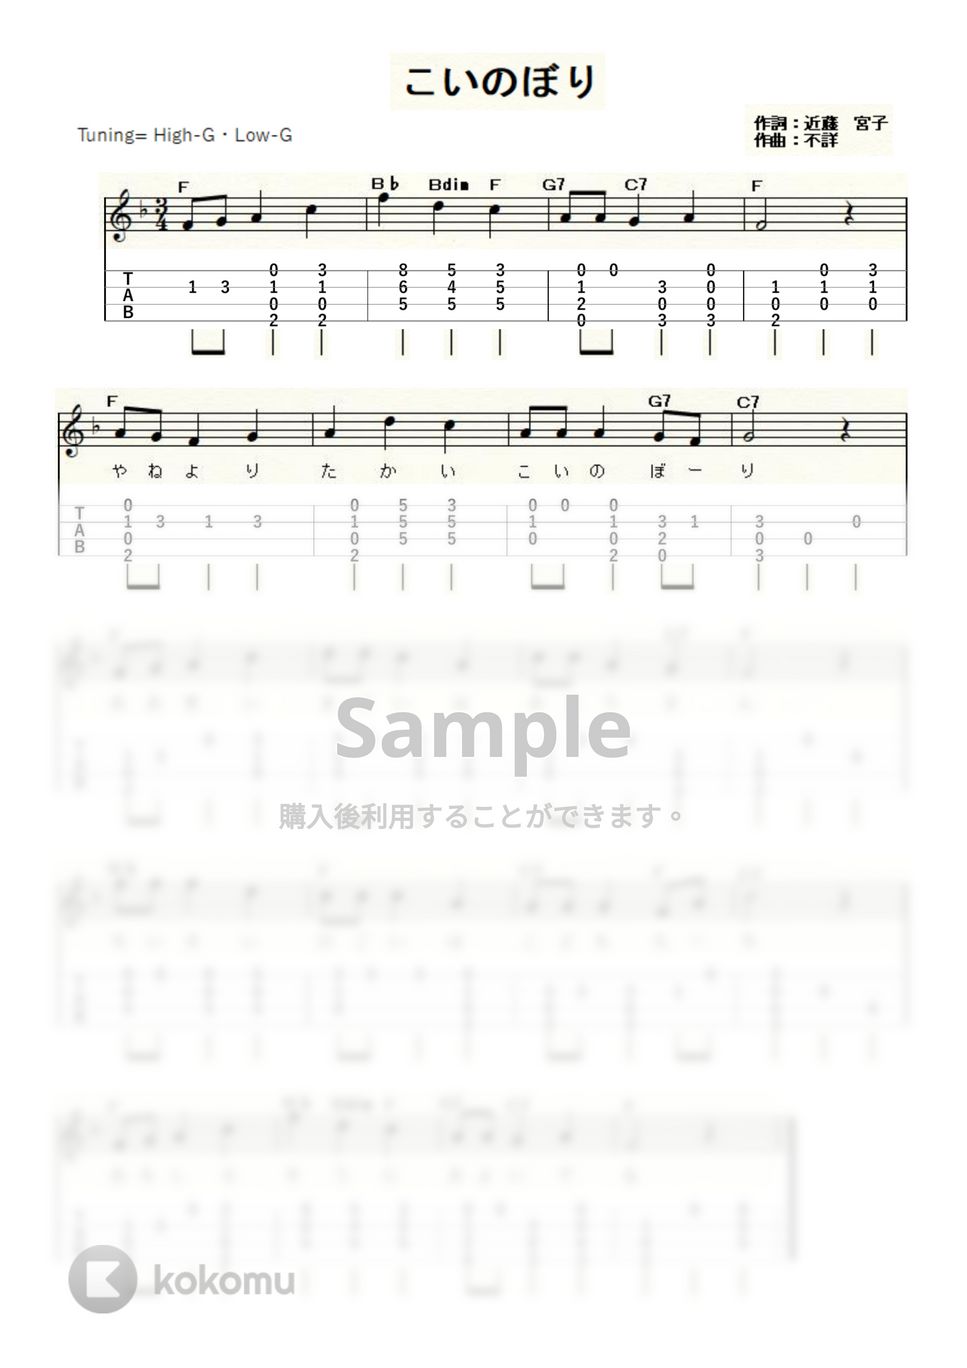 こいのぼり (ｳｸﾚﾚｿﾛ/High-G・Low-G/初級～中級) by ukulelepapa